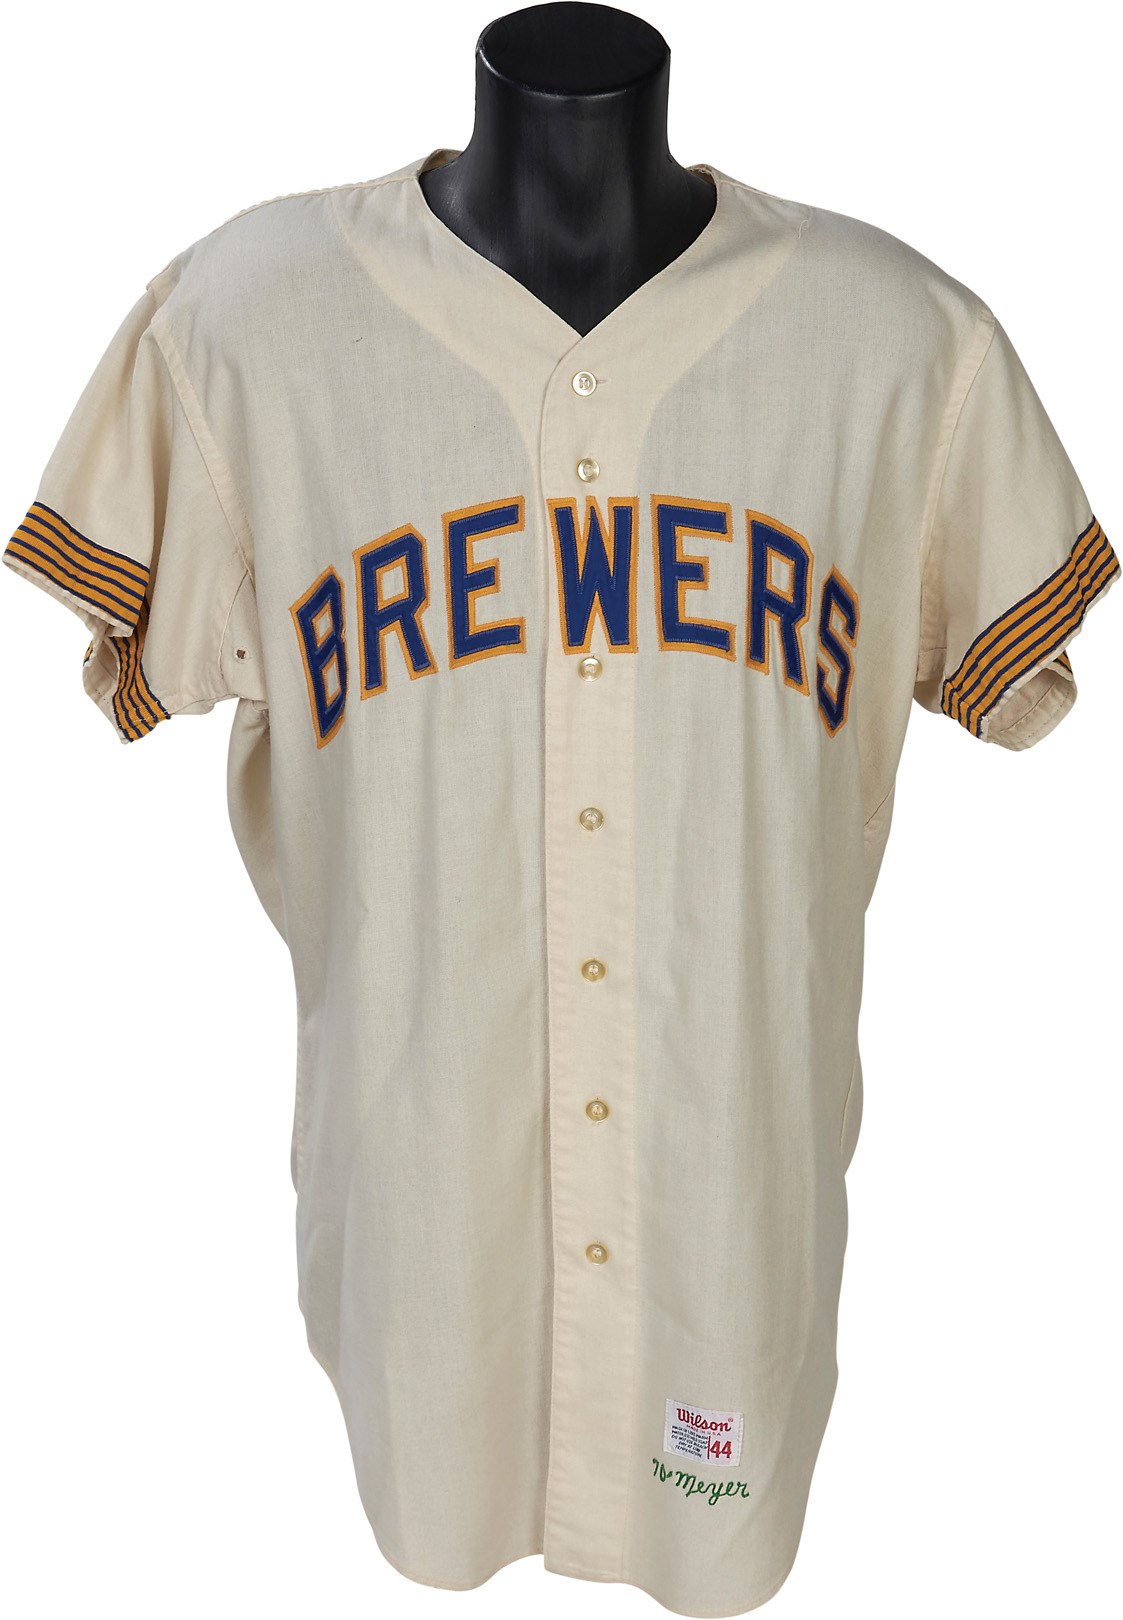 Baseball Equipment - 1970 Milwaukee Brewers Game Worn Jersey - Inaugural Season